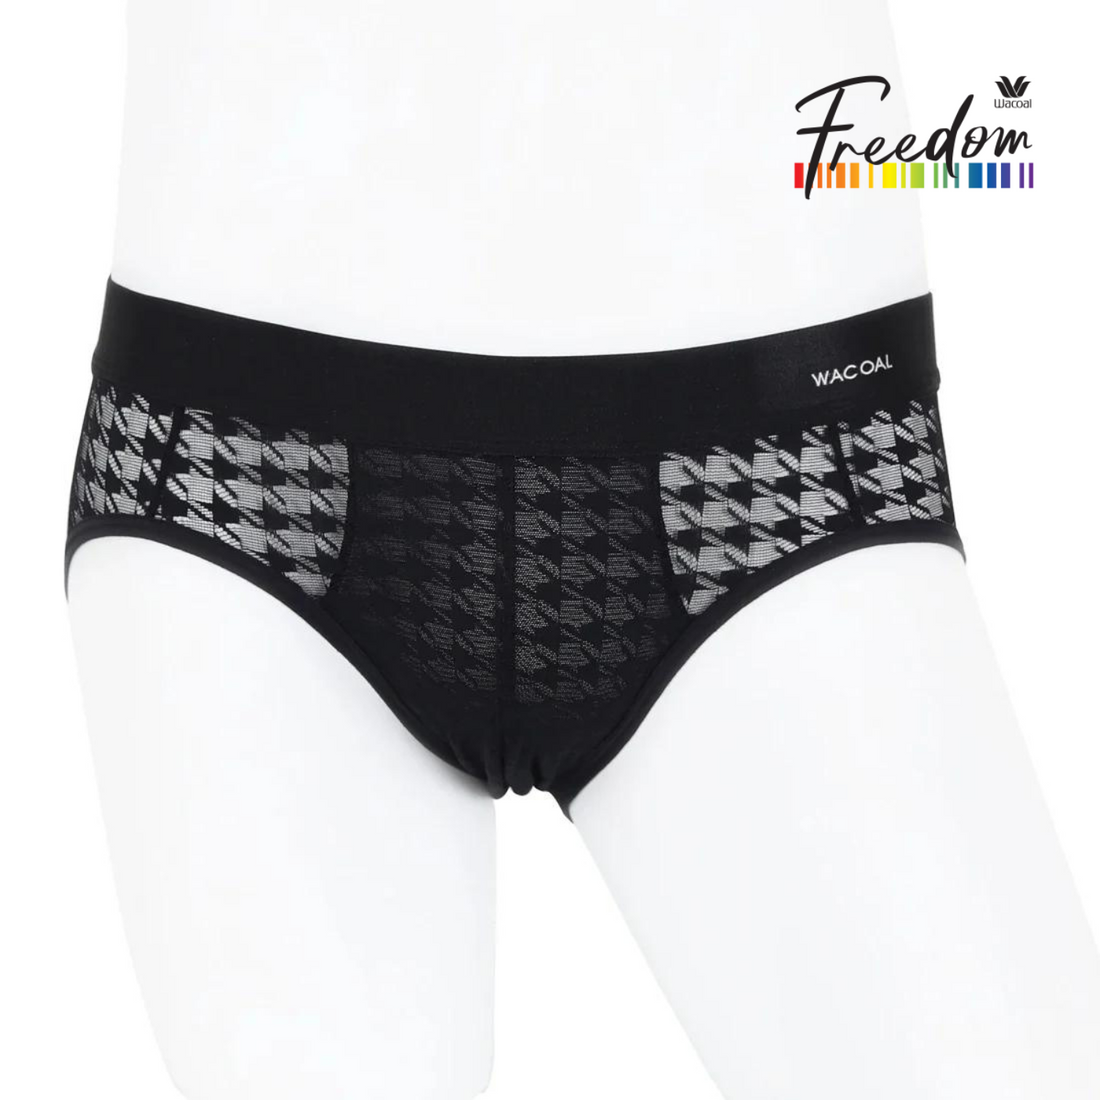 Wacoal Freedom LIMITED UNDERWEAR (Bikini) Men's underwear lace model WX2681 black (BL)